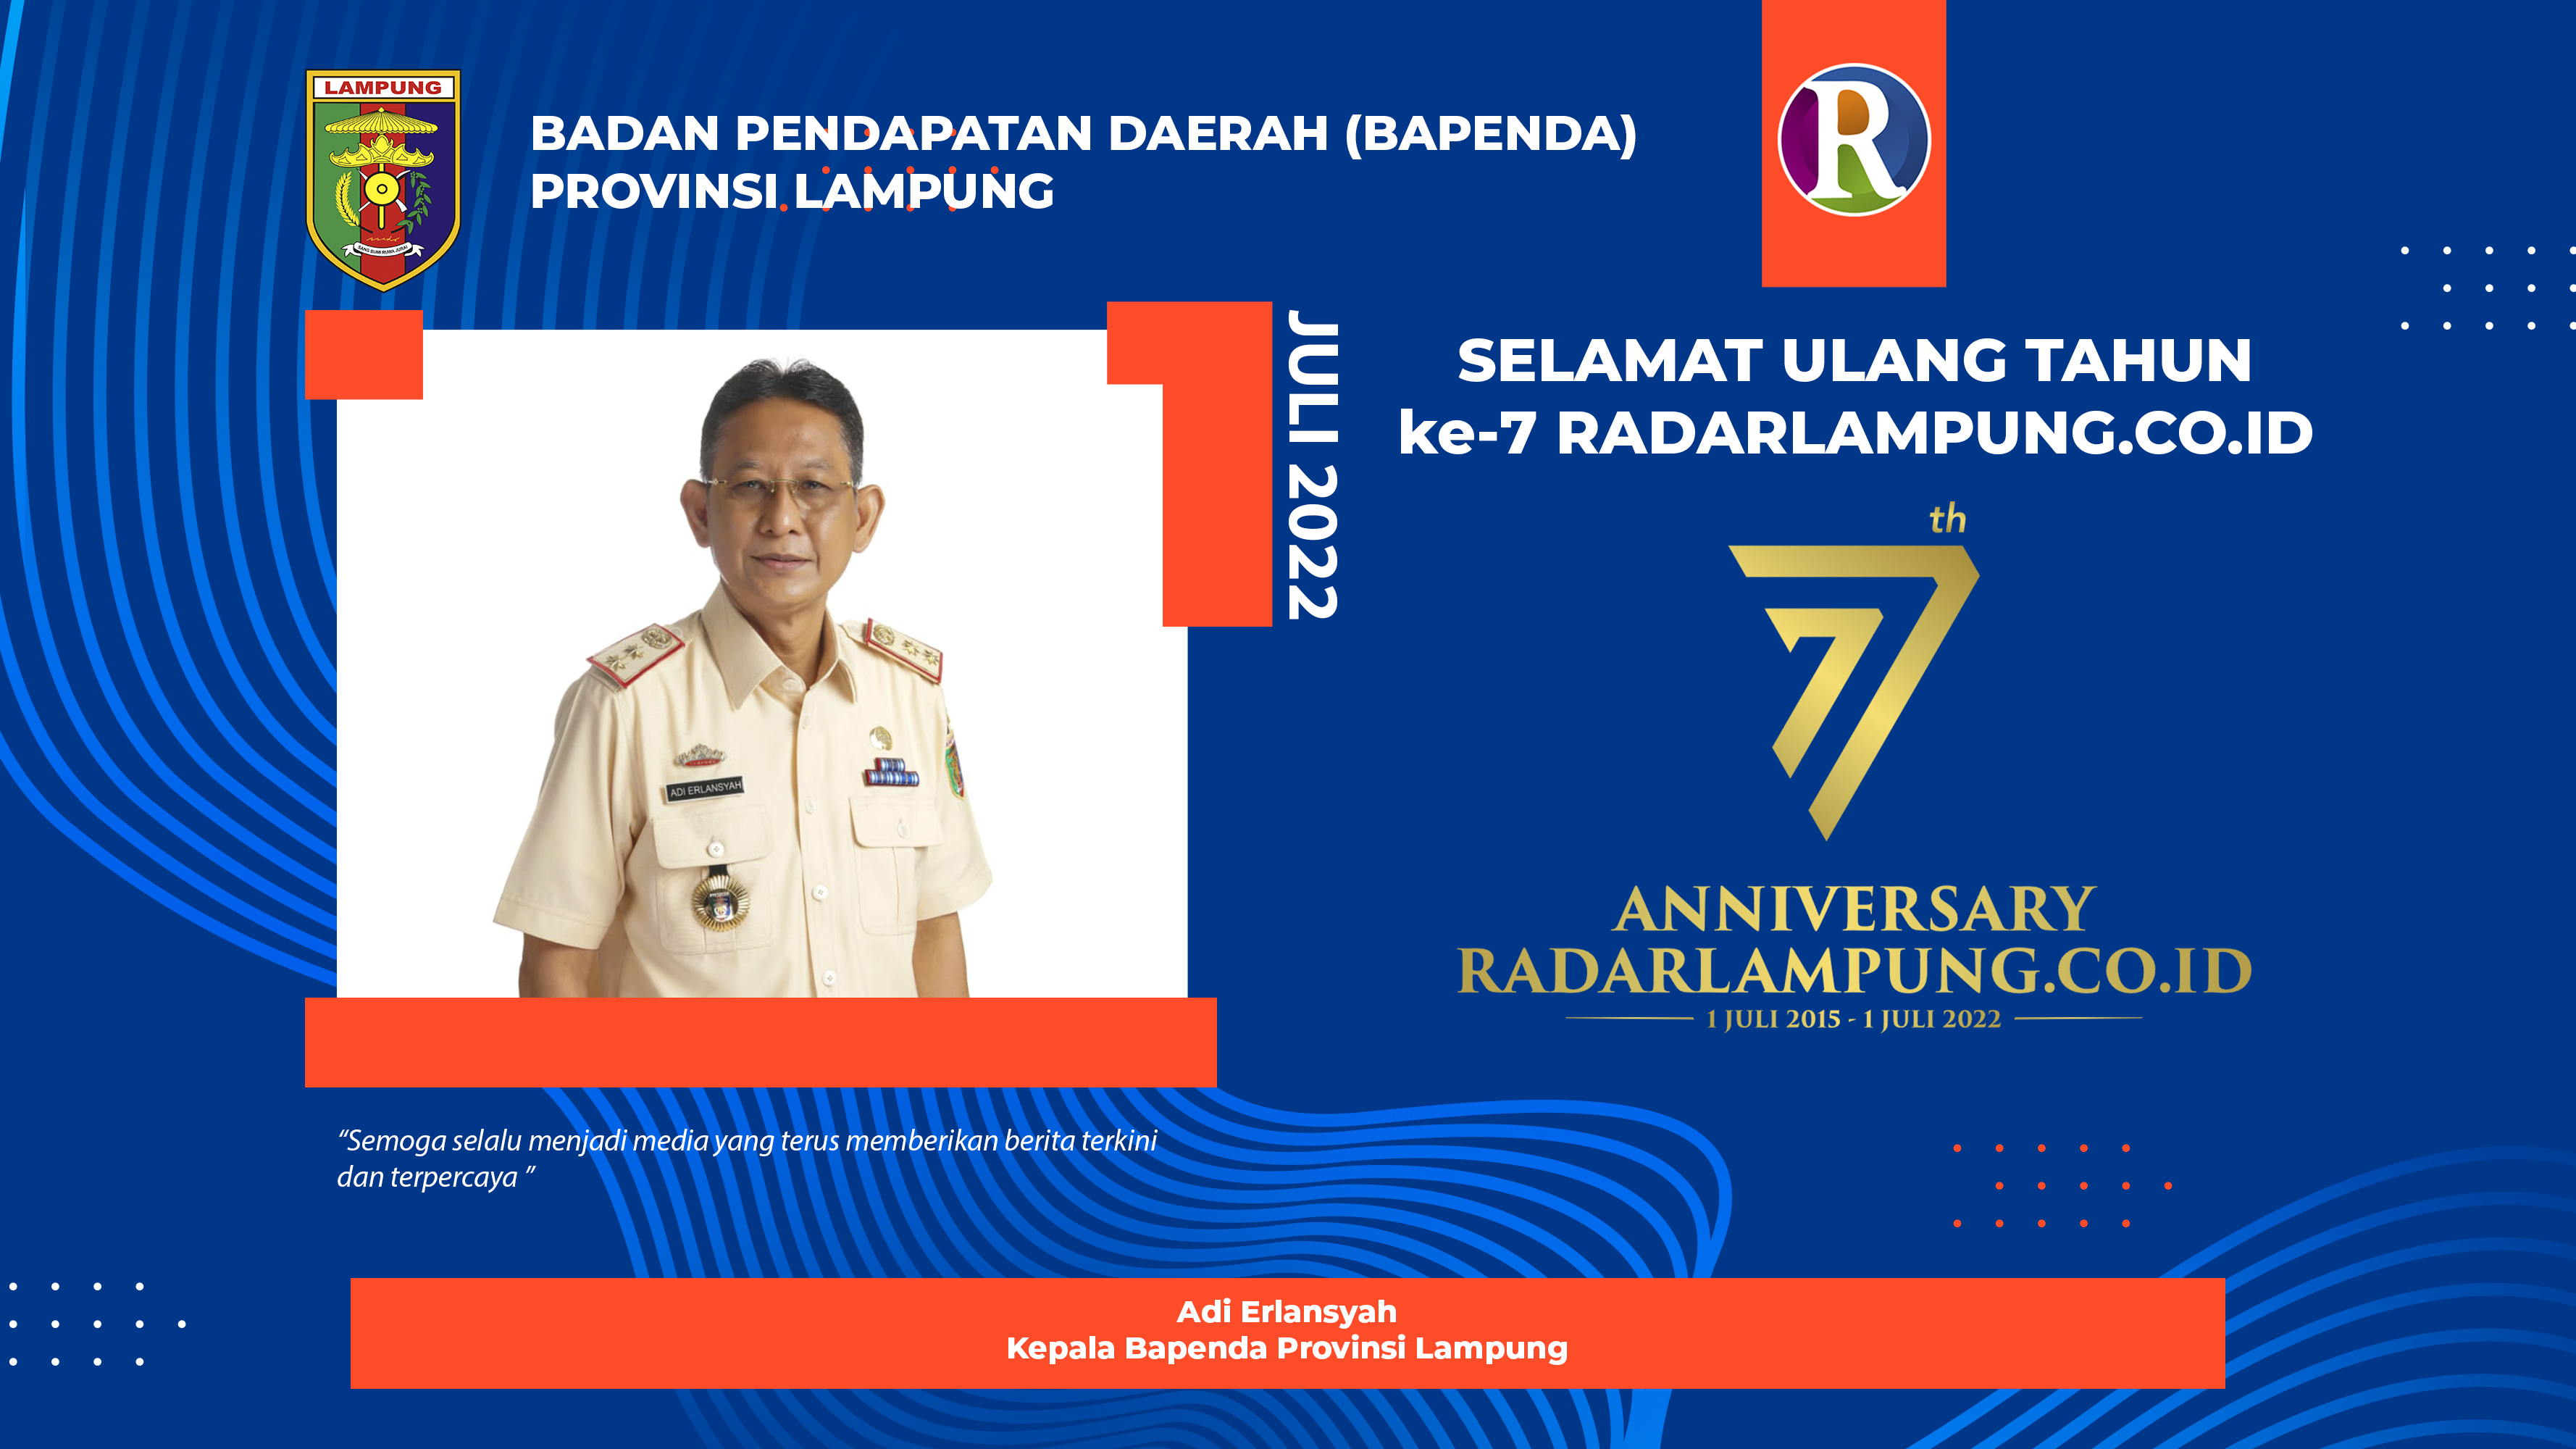 Badan Pendapatan Daerah Provinsi Lampung Mengucapkan Selamat Ulang Tahun ke-7 Radarlampung.co.id